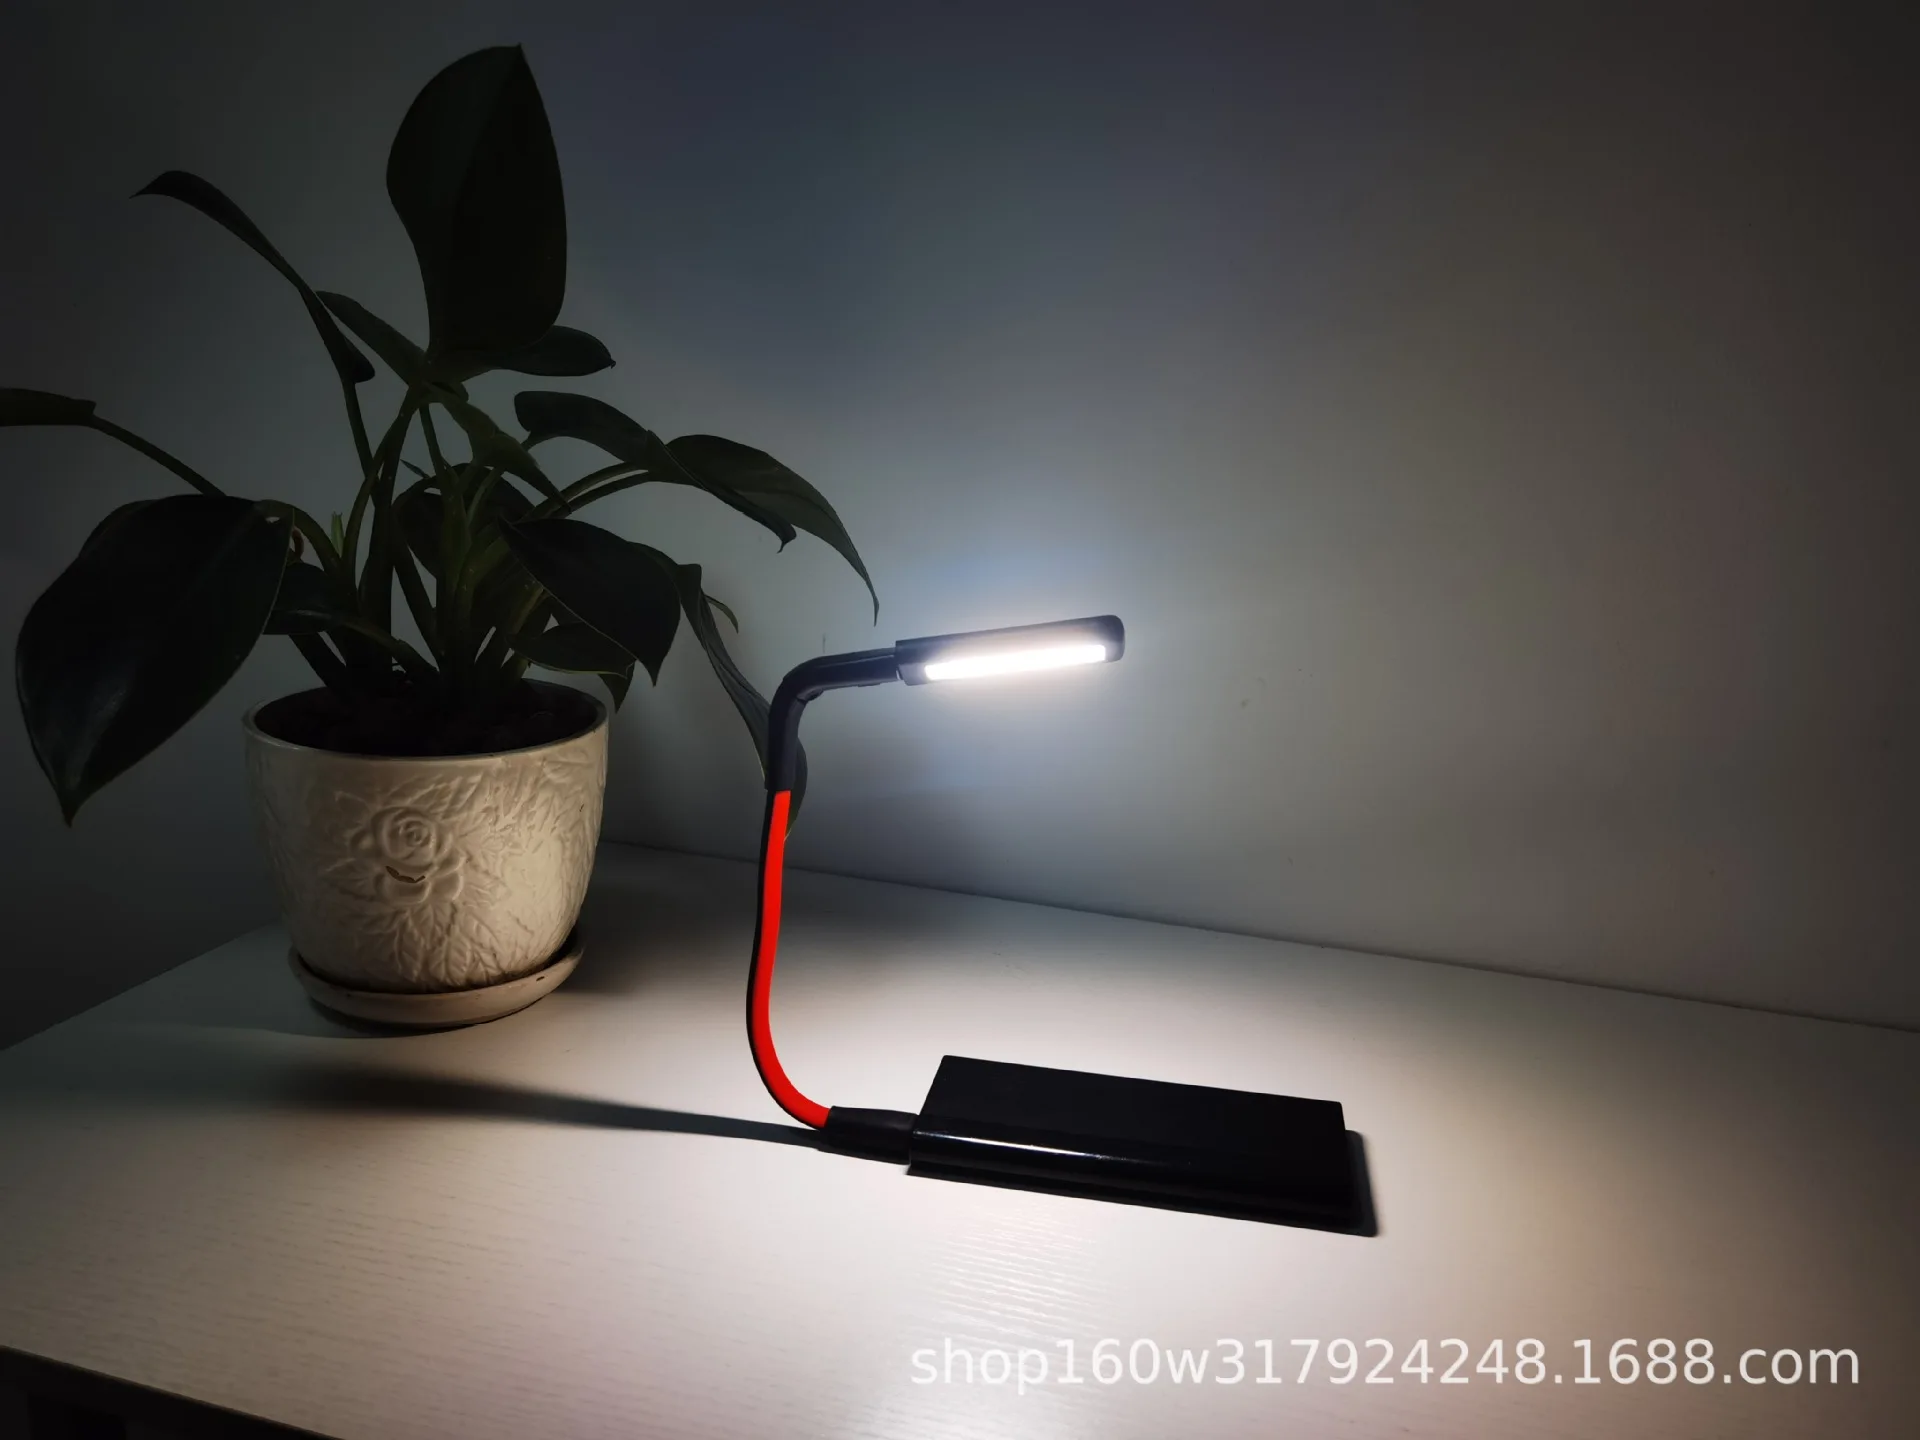 Ночник с интерфейсом USB, креативная складная настольная лампа, чувствительная к жестам, светодиодная портативная прикроватная лампа для общежития